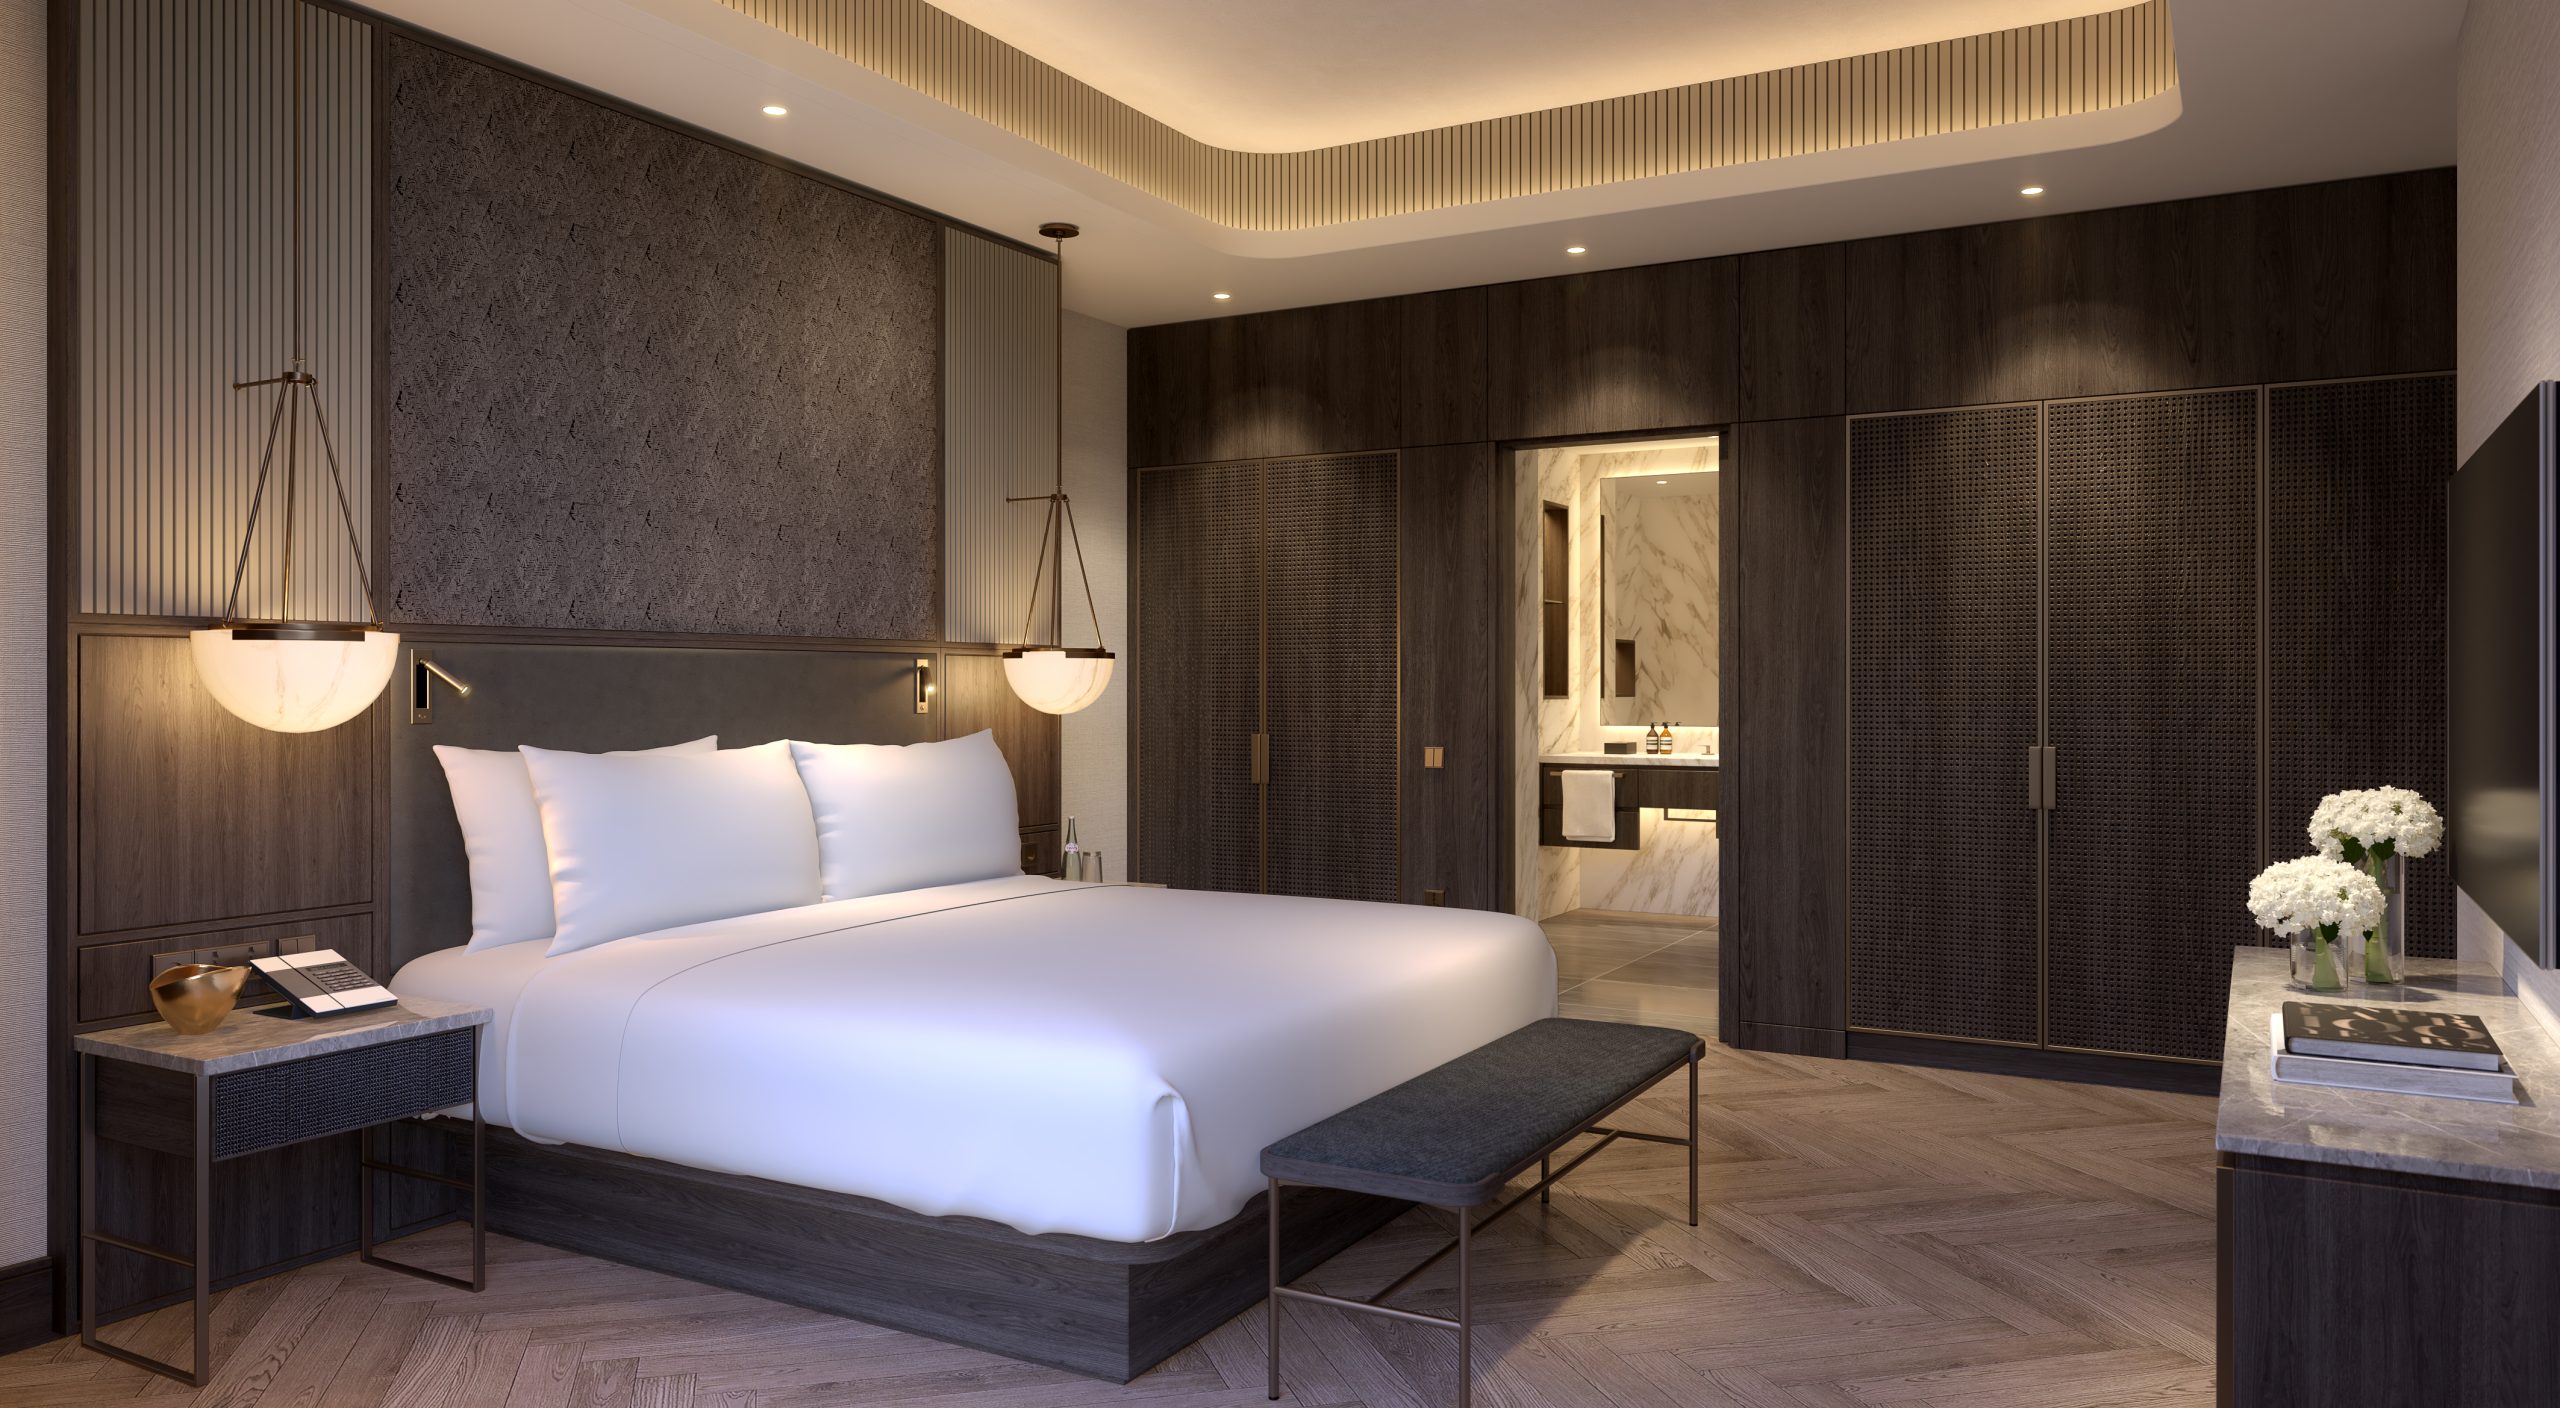 3 bed luxury apartment next to Grand Hyatt